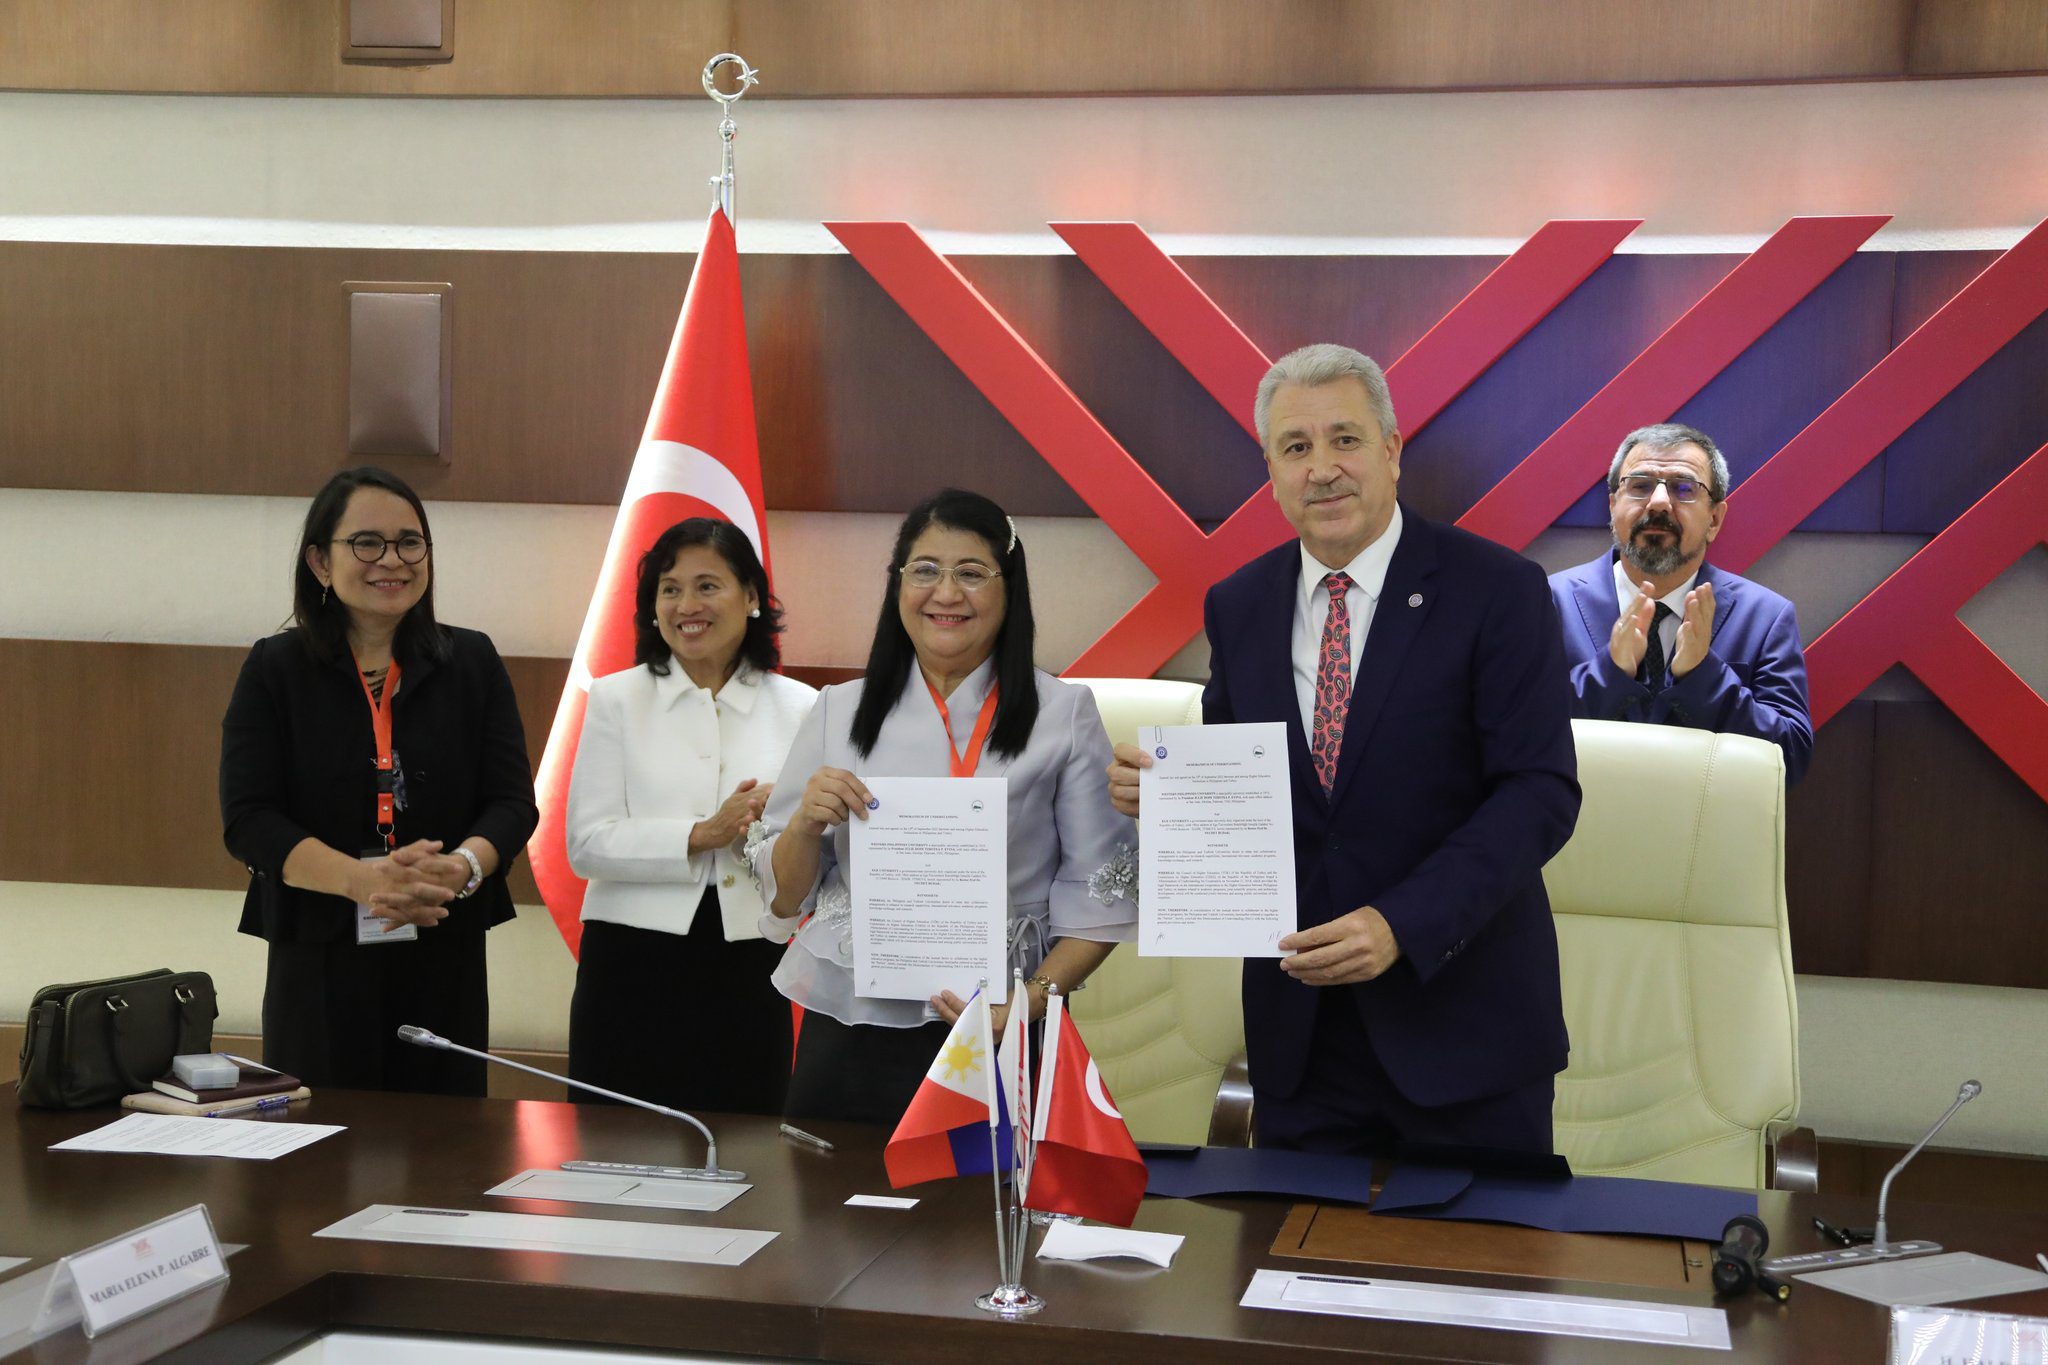 EÜ ile Filipinler’den 7 üniversite arasında akademik iş birliği protokolü imzalandı